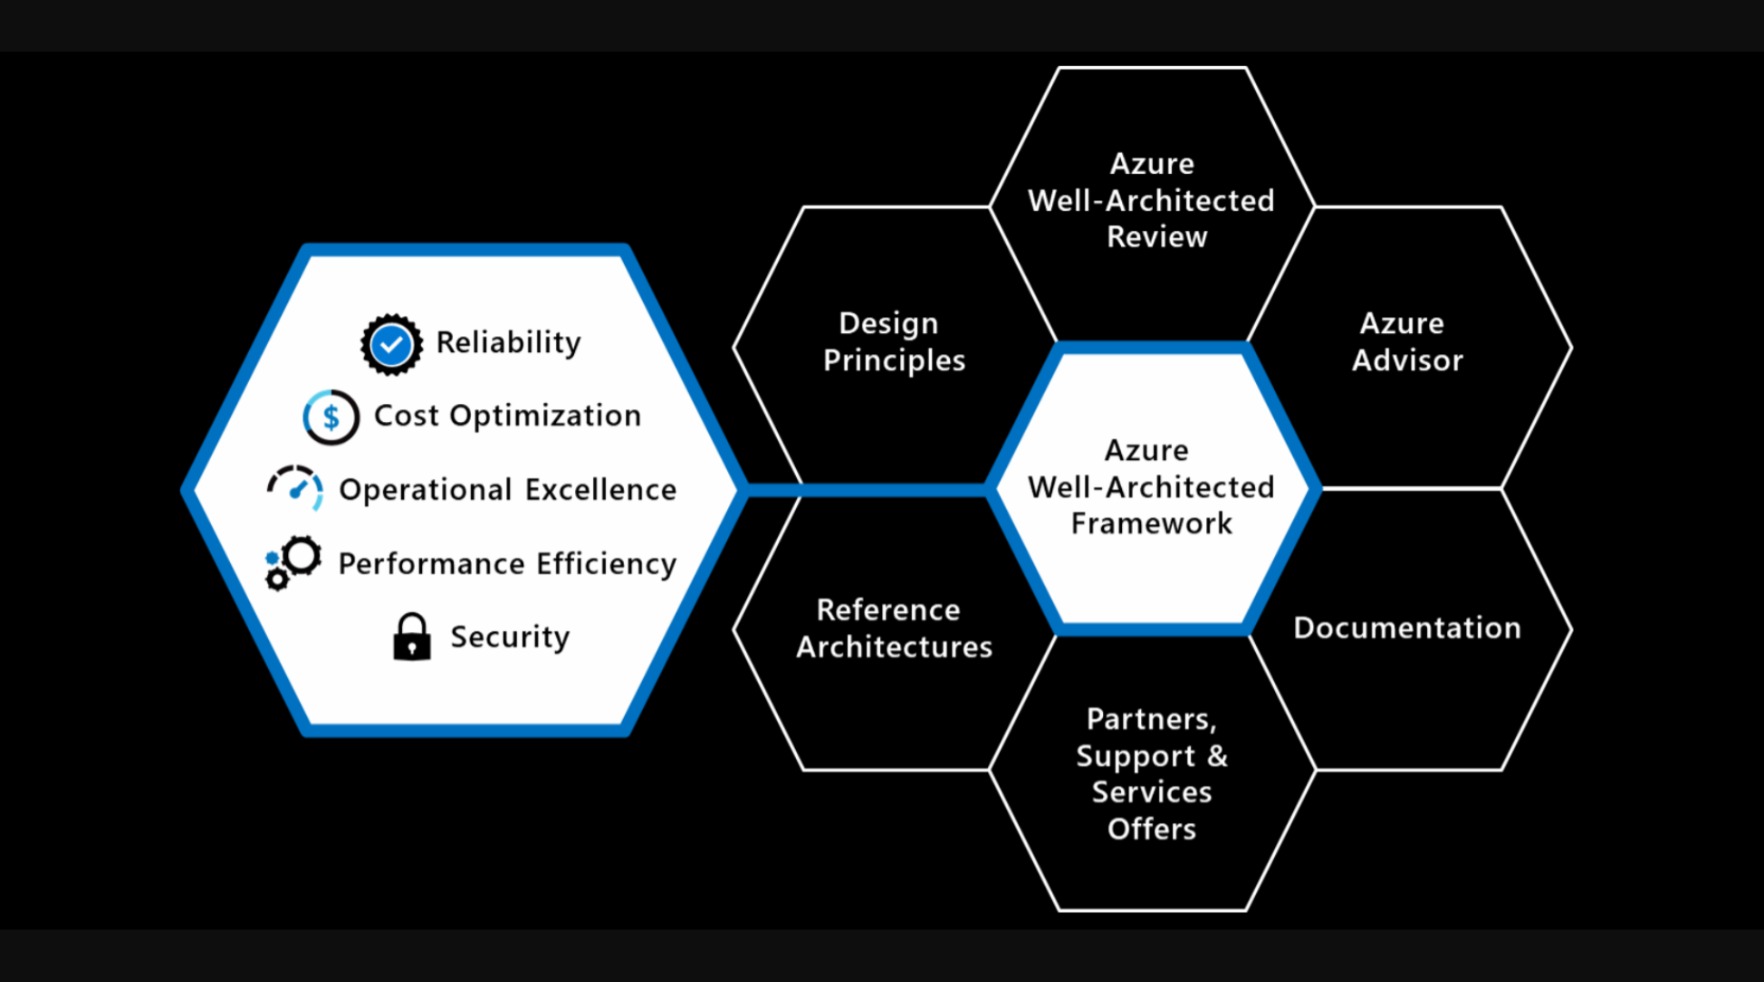 Diagramm des Well-Architected Framework und der unterstützenden Elemente